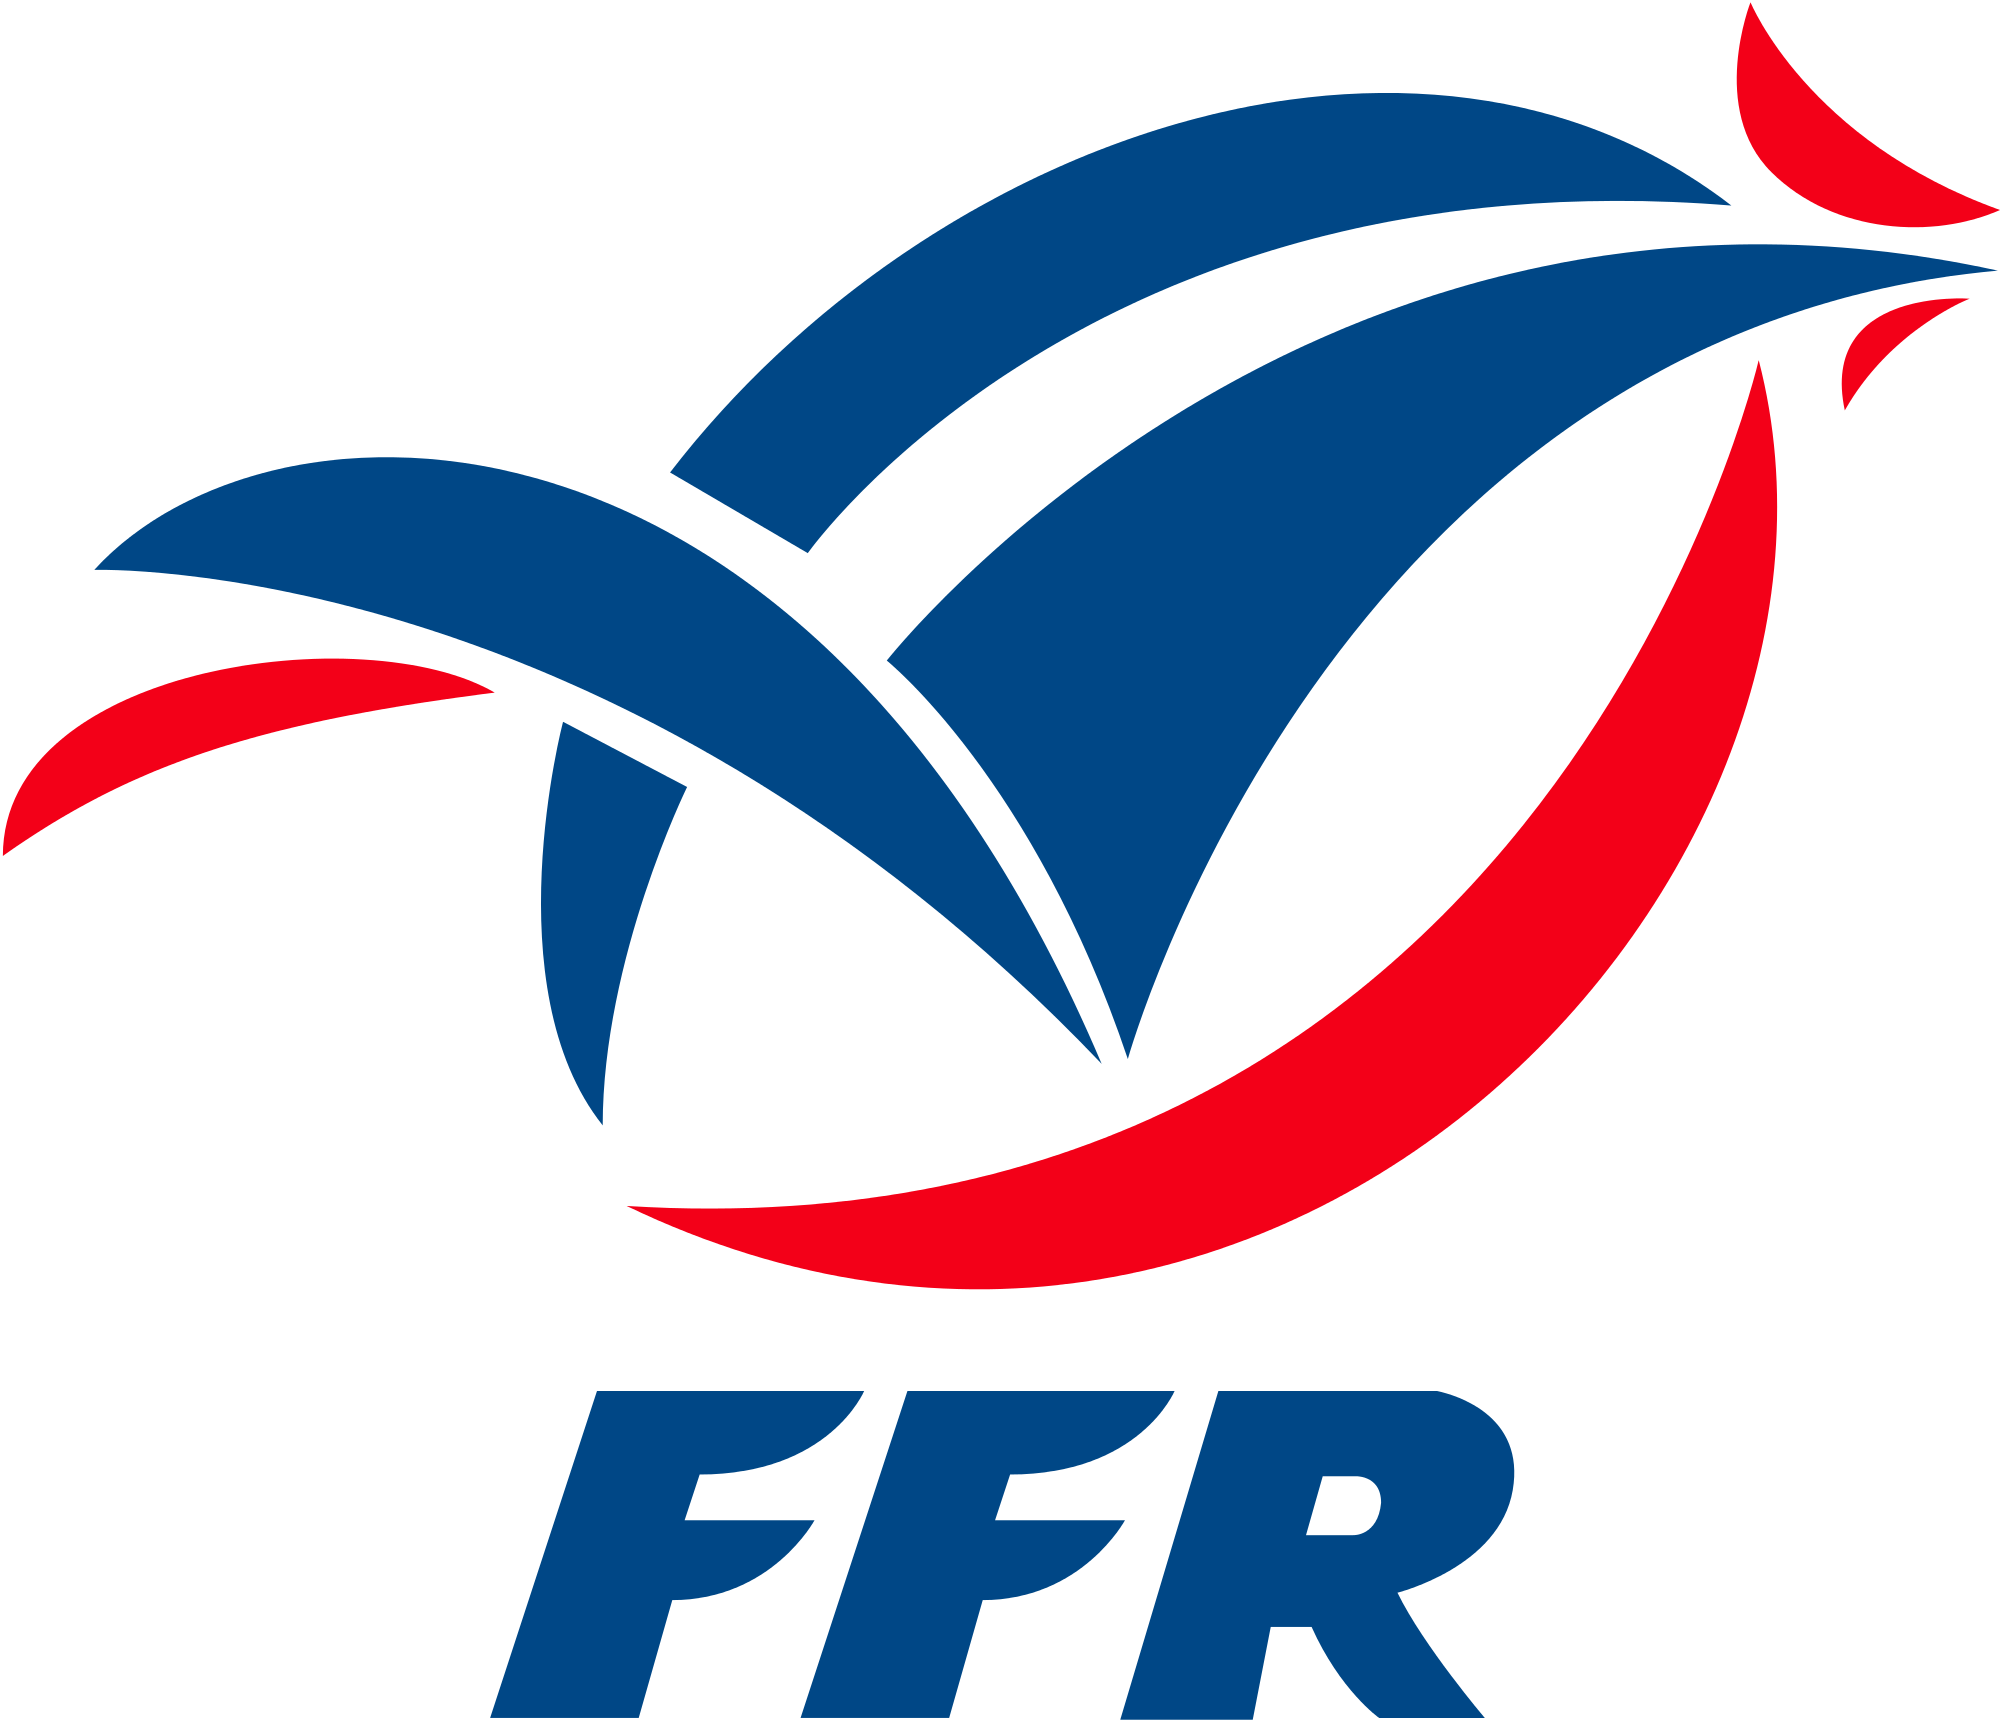 Fusion Stade Français Paris Et Racing 92 - France Rugby Team Logo (2000x1723)